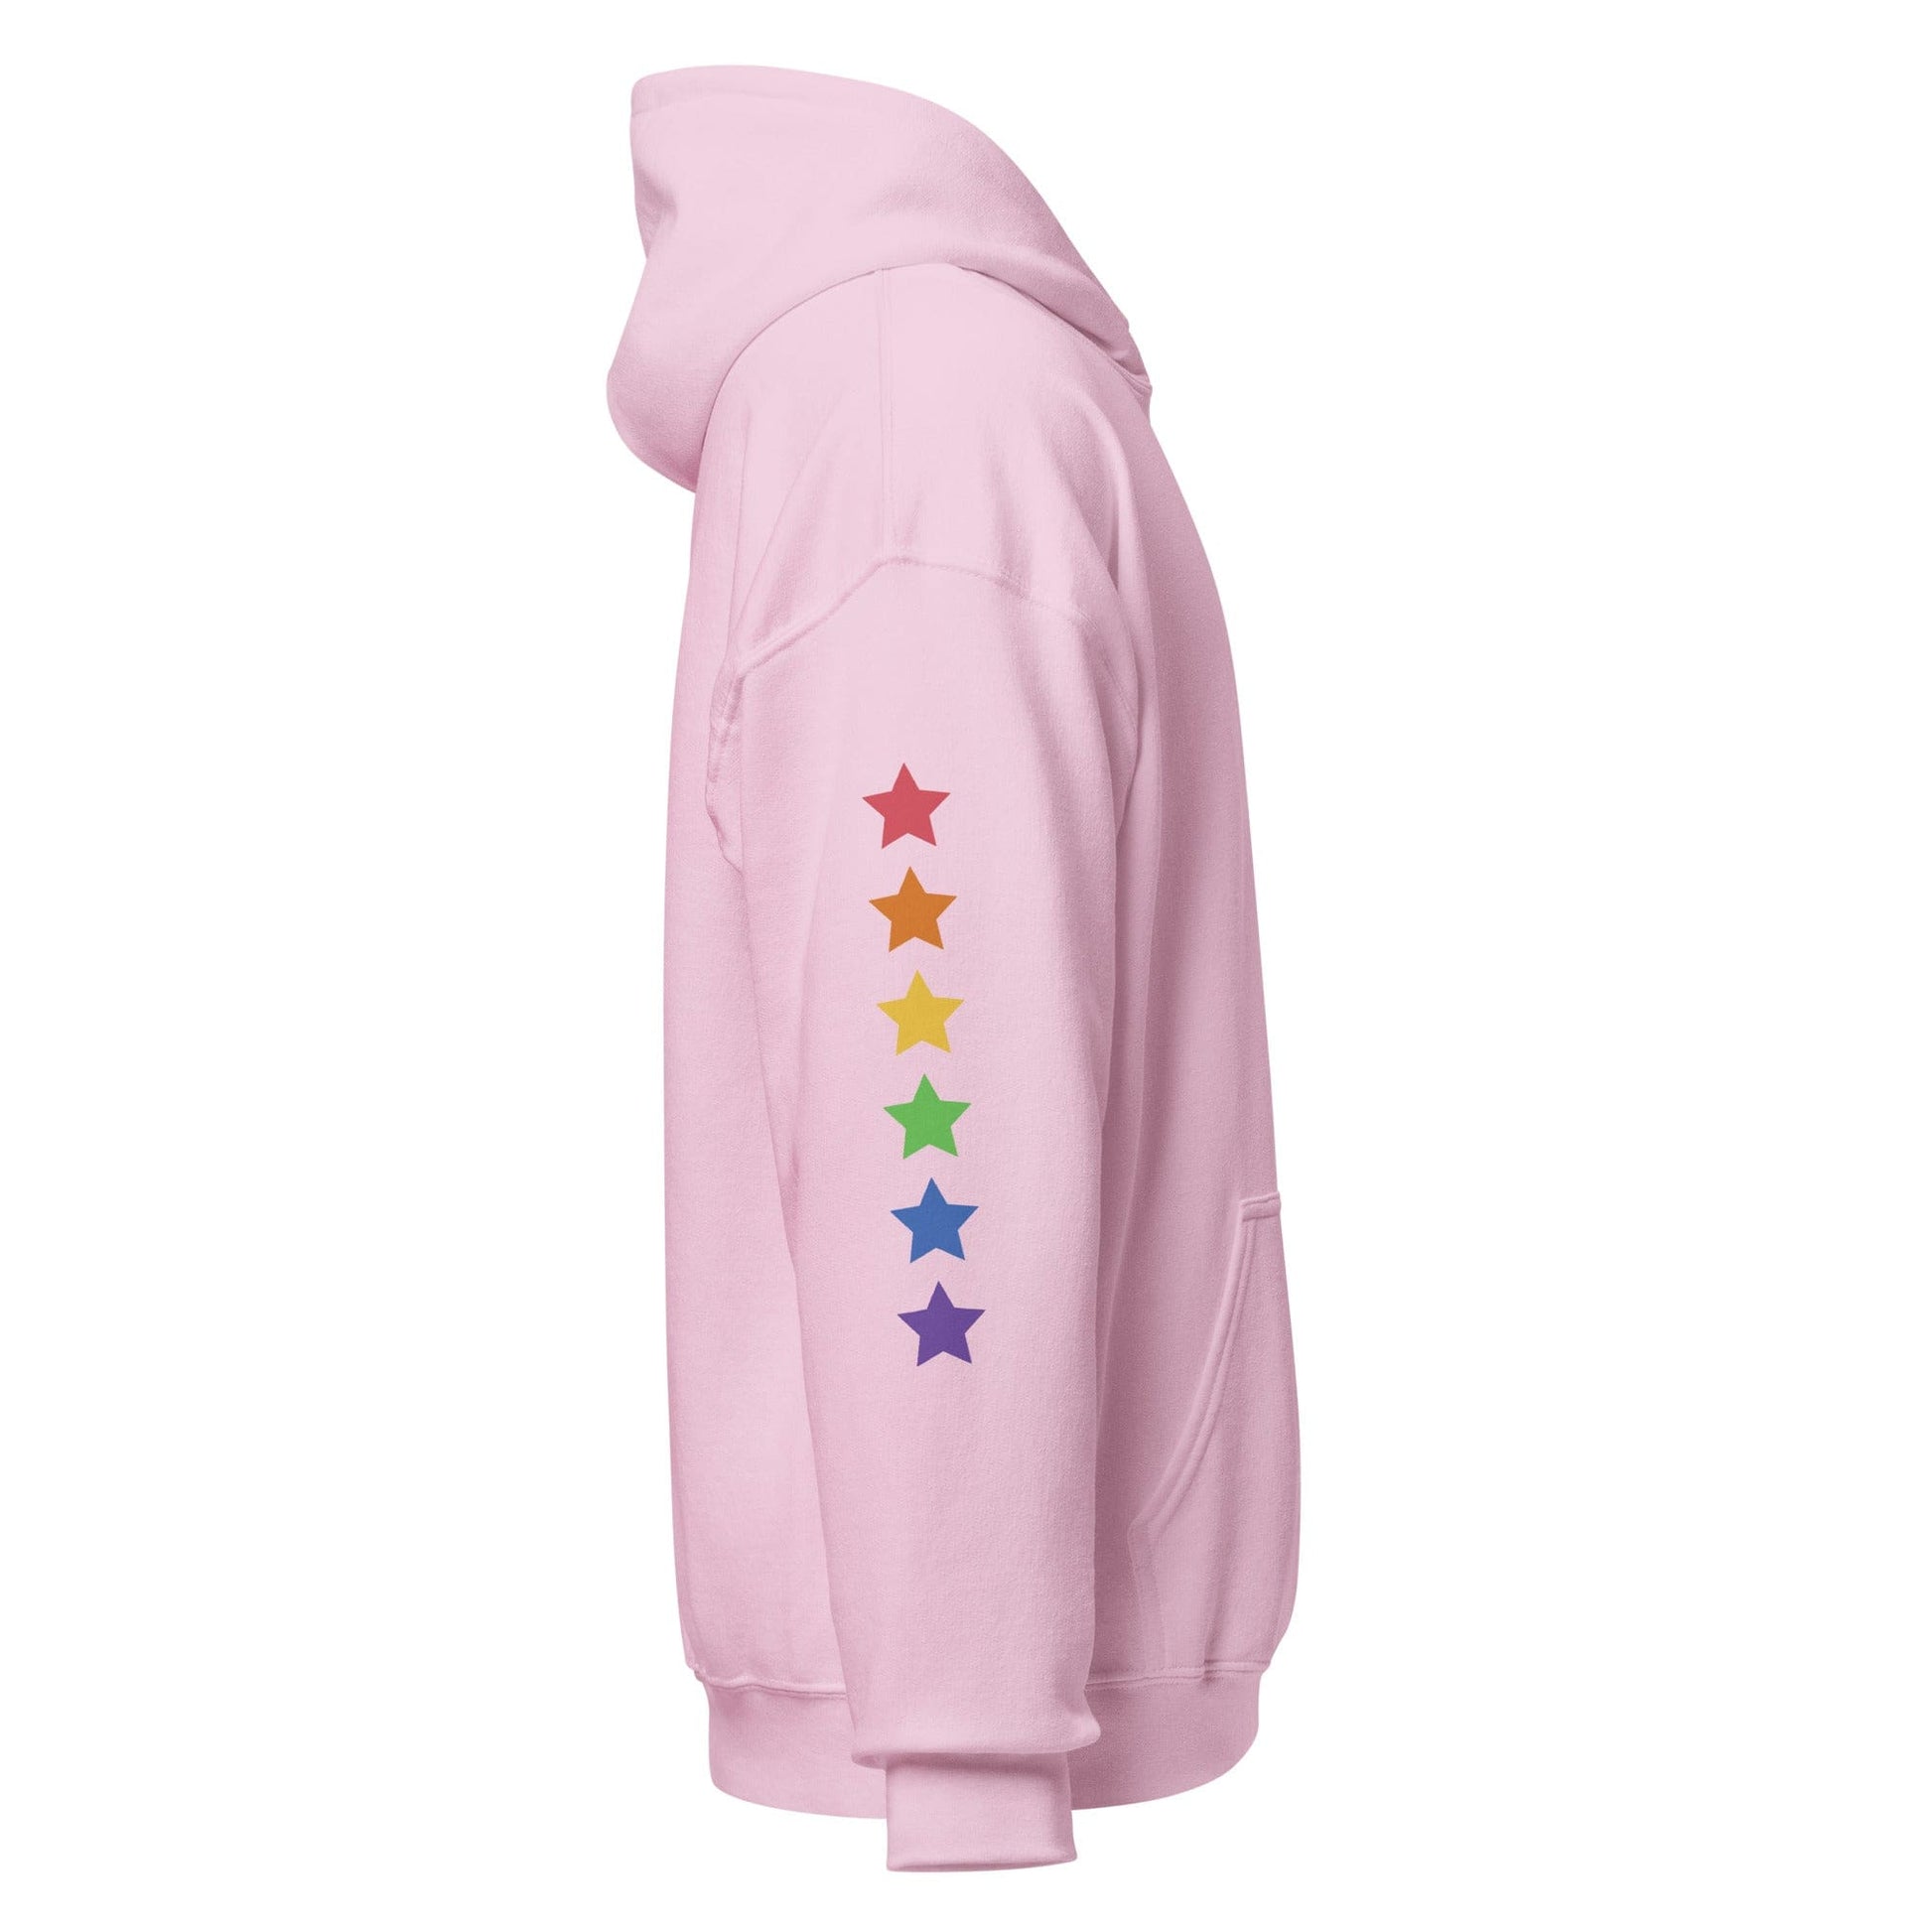 right-side-light-pink-genderless-stars-pride-hoodie-by-feminist-define